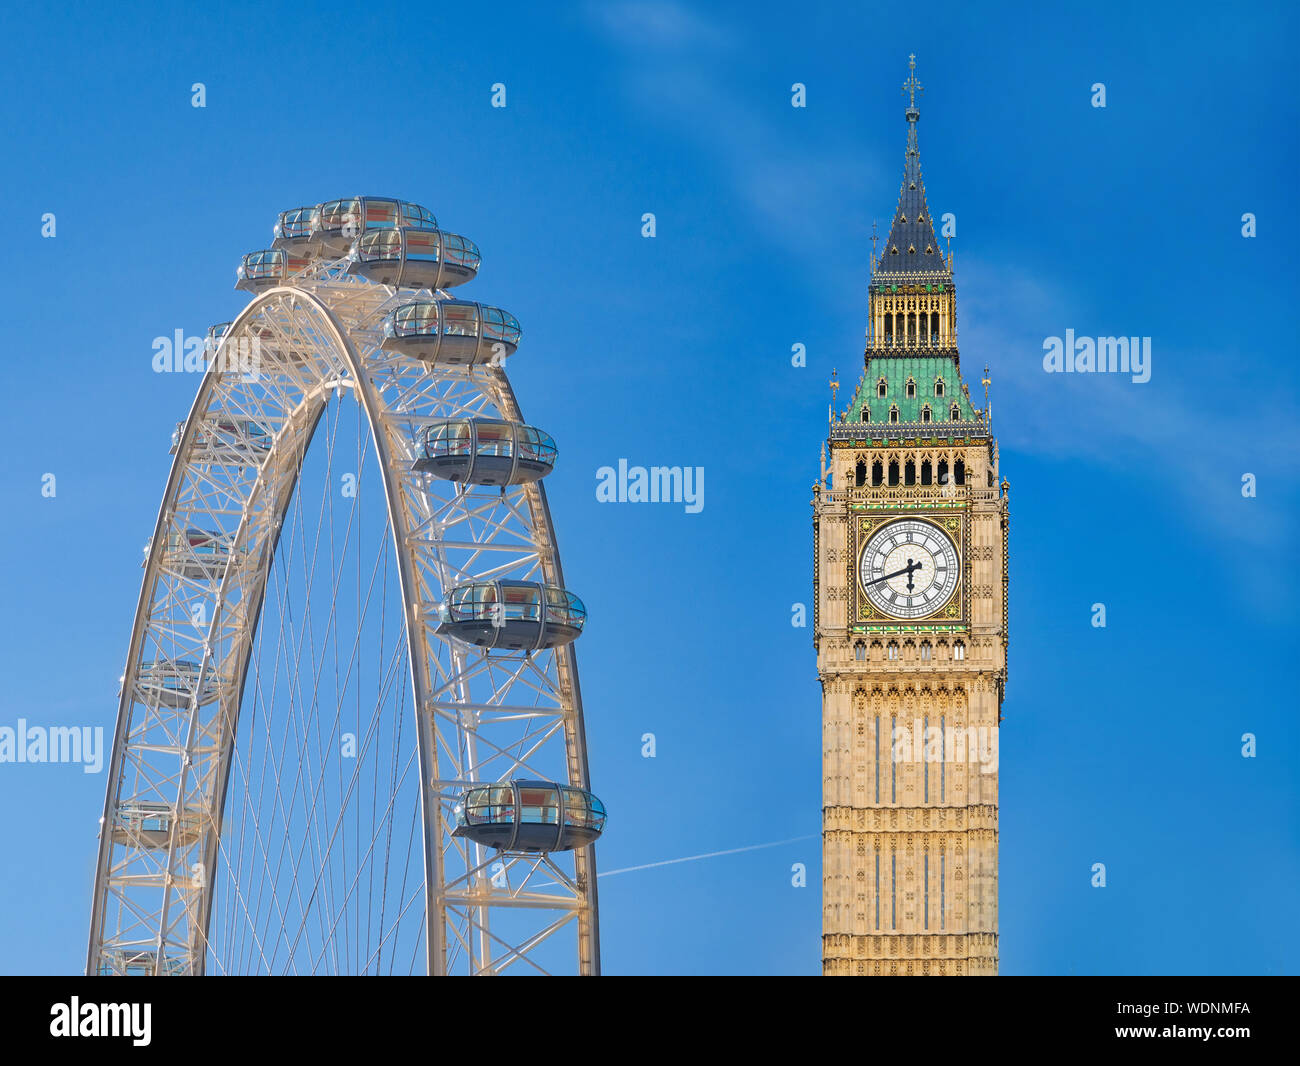 Vue rapprochée du célèbre monument de l'Angleterre le Big Ben, London Eye on Blue sky Banque D'Images